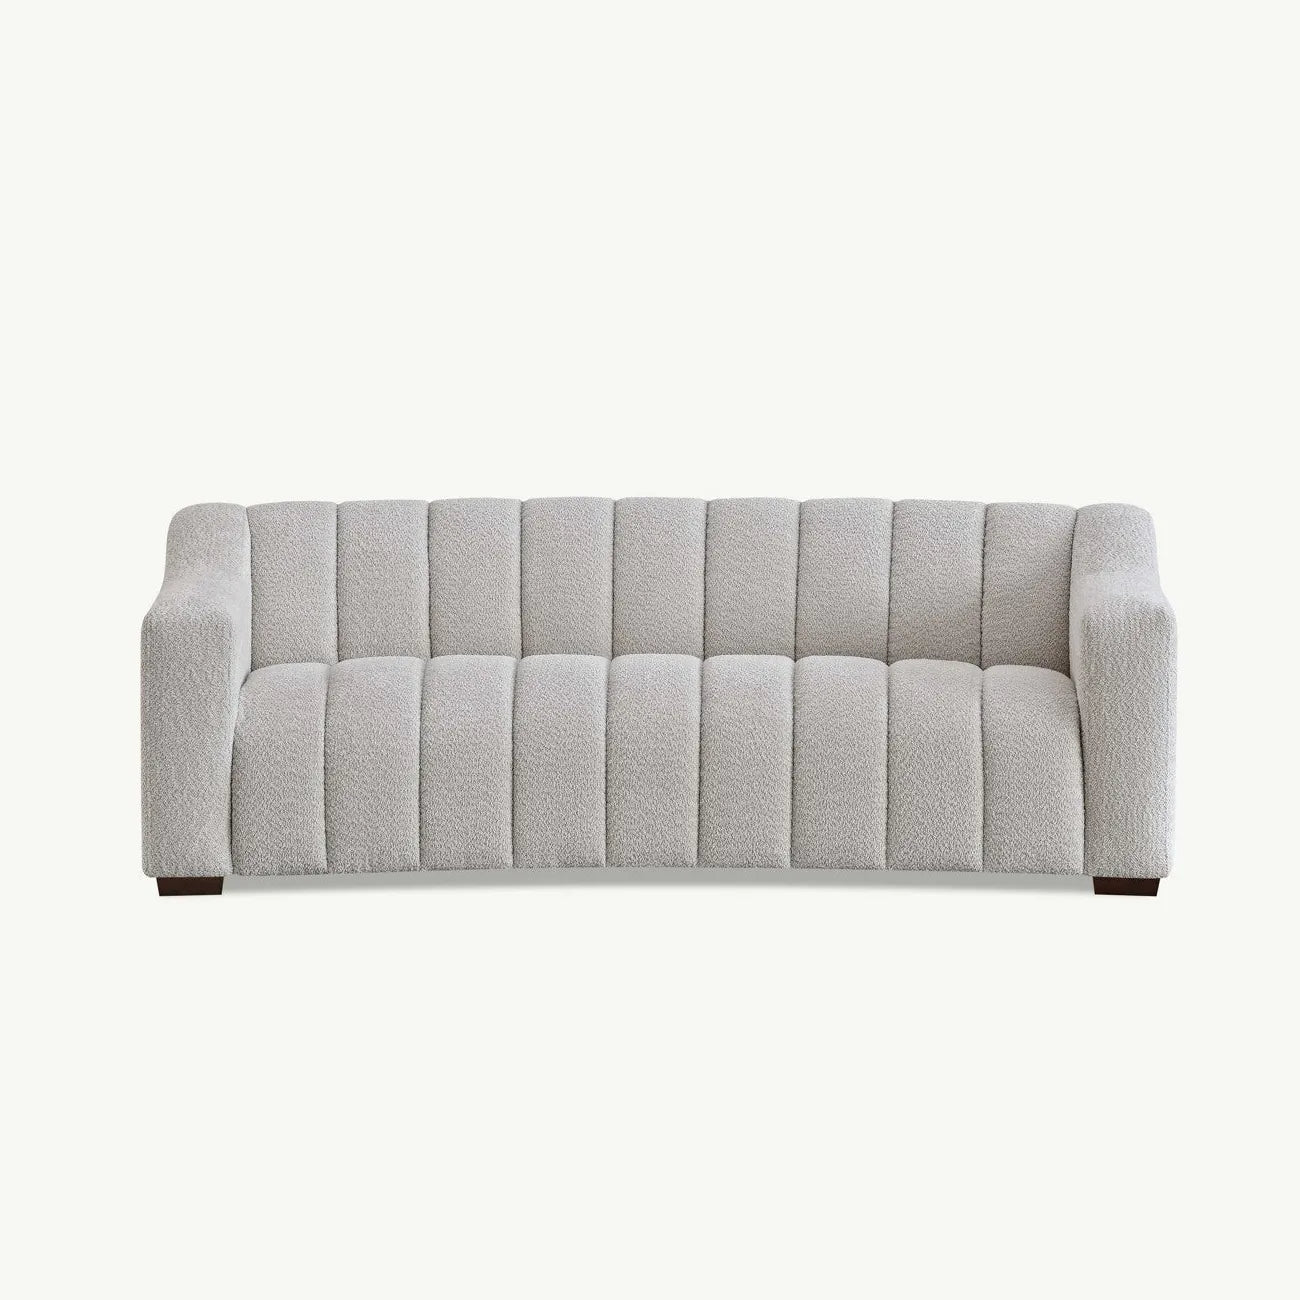 Paloma 3 Seater Sofa in Oatmeal Boucle